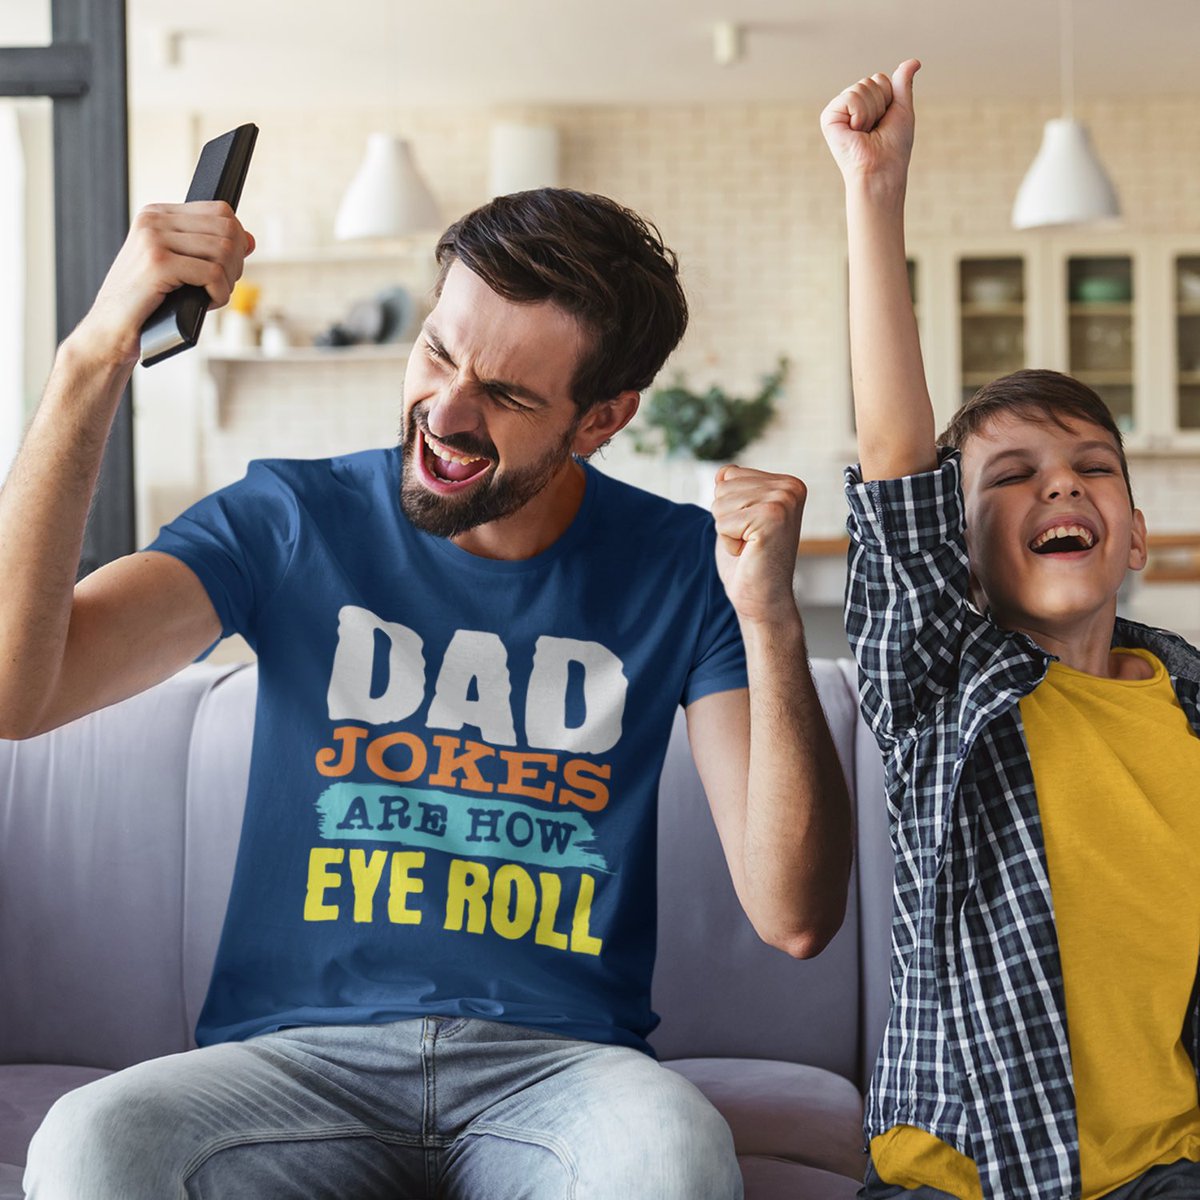 Dad jokes are how eye roll Father’s Day  T-Shirt zazzle.com/z/i24leilp?rf=… via @zazzle
#fathersday2024 #fathersday #fathersdaygifts #DADDY #dadjokes #eyeroll #zazzlemade